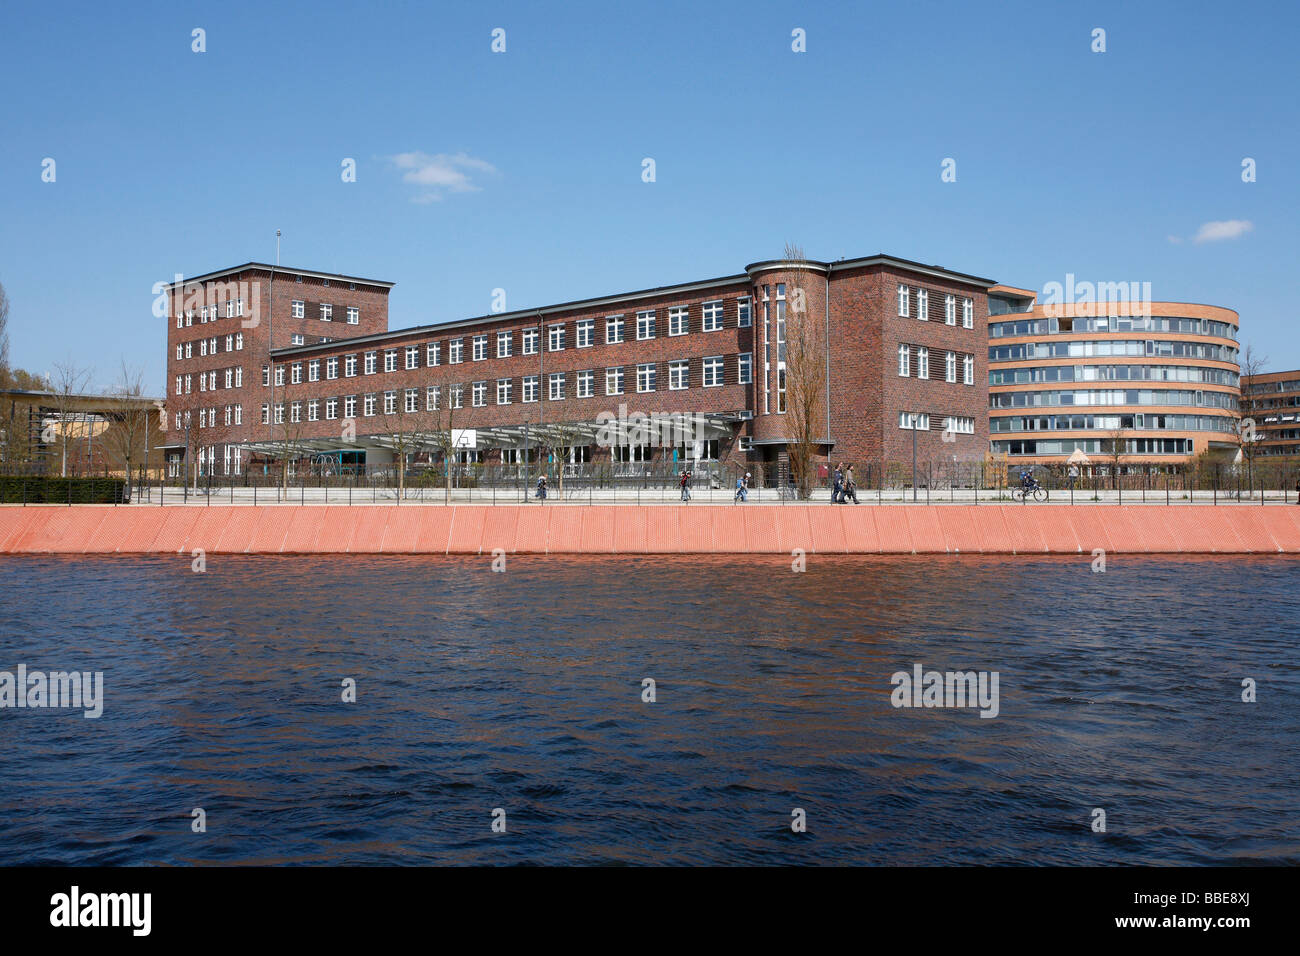 L'école élémentaire Anne Frank, l'ancien bâtiment administratif de la gare de marchandises sur la rivière Spree, Berlin, Germany, Europe Banque D'Images